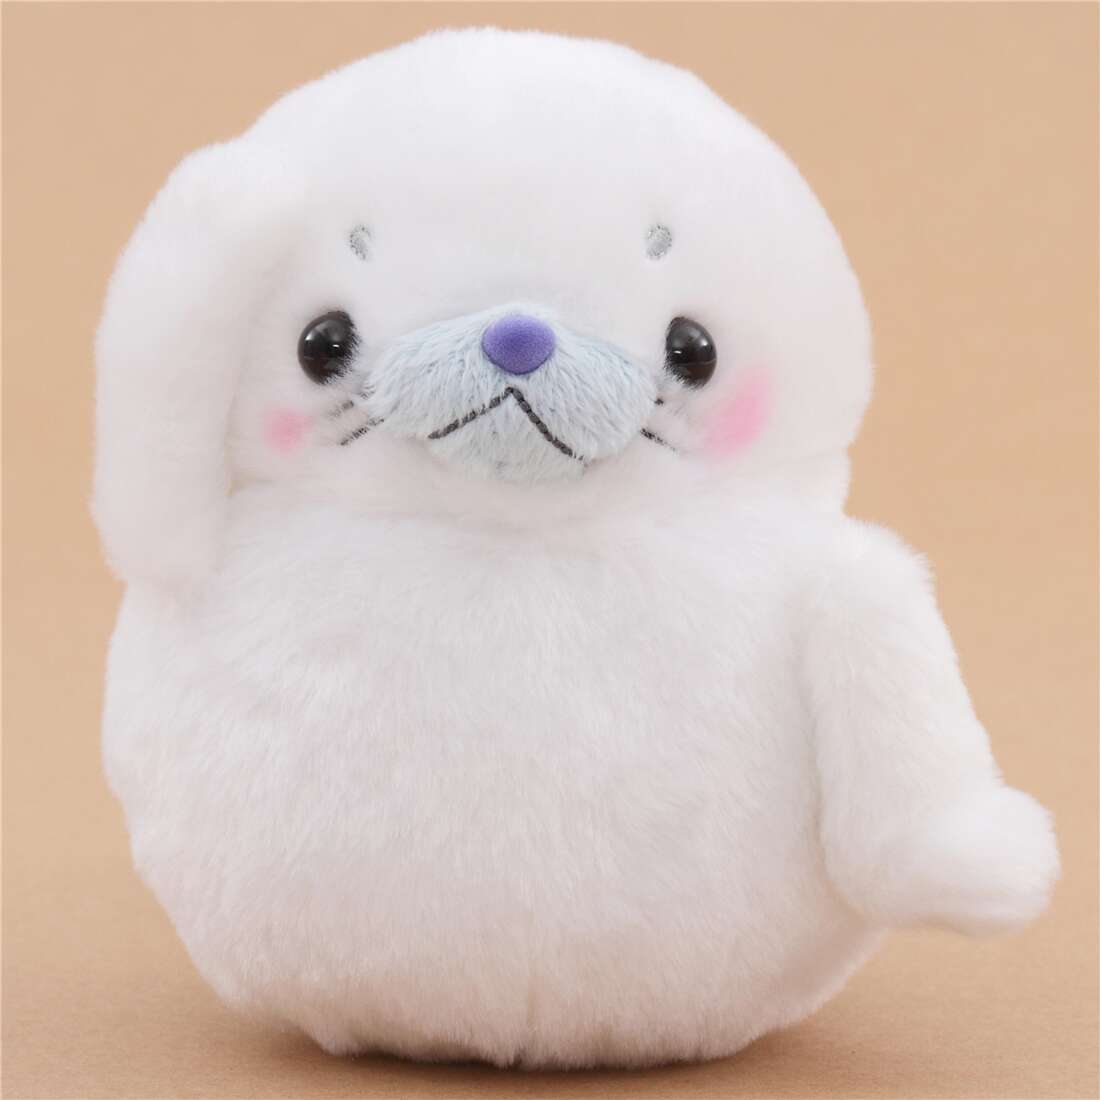 white seal toy